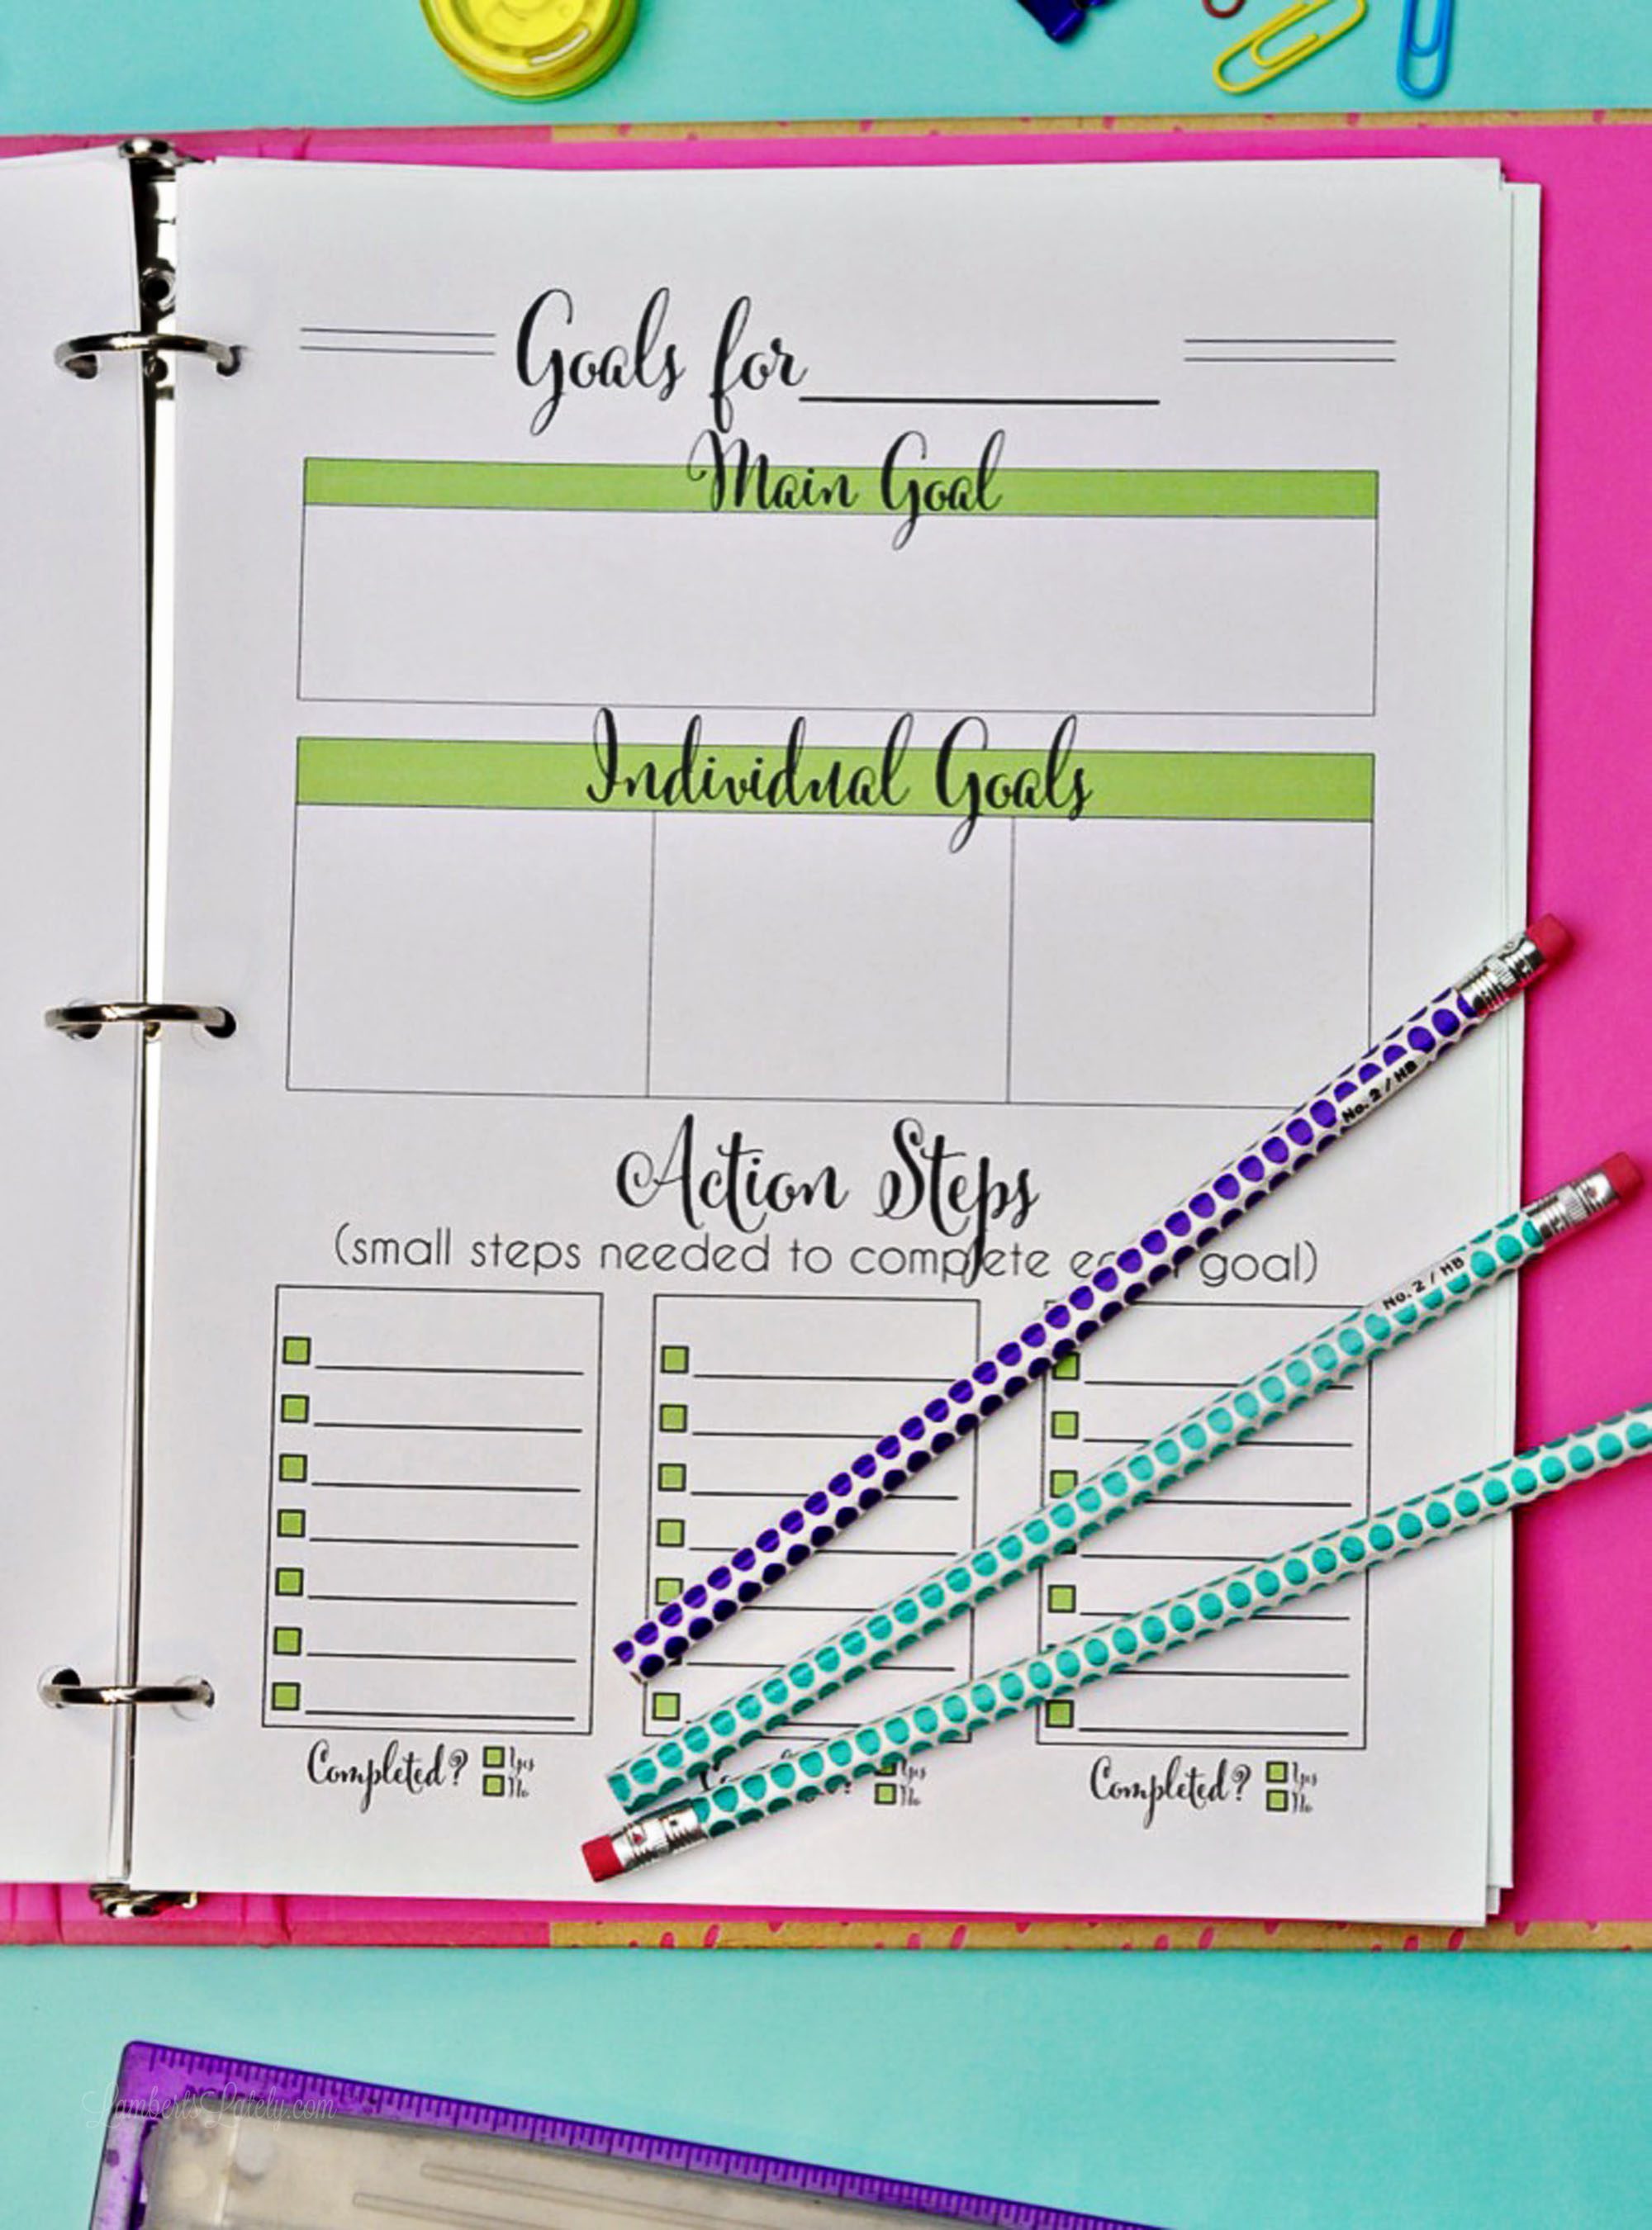 goal planning worksheet in a pink binder.